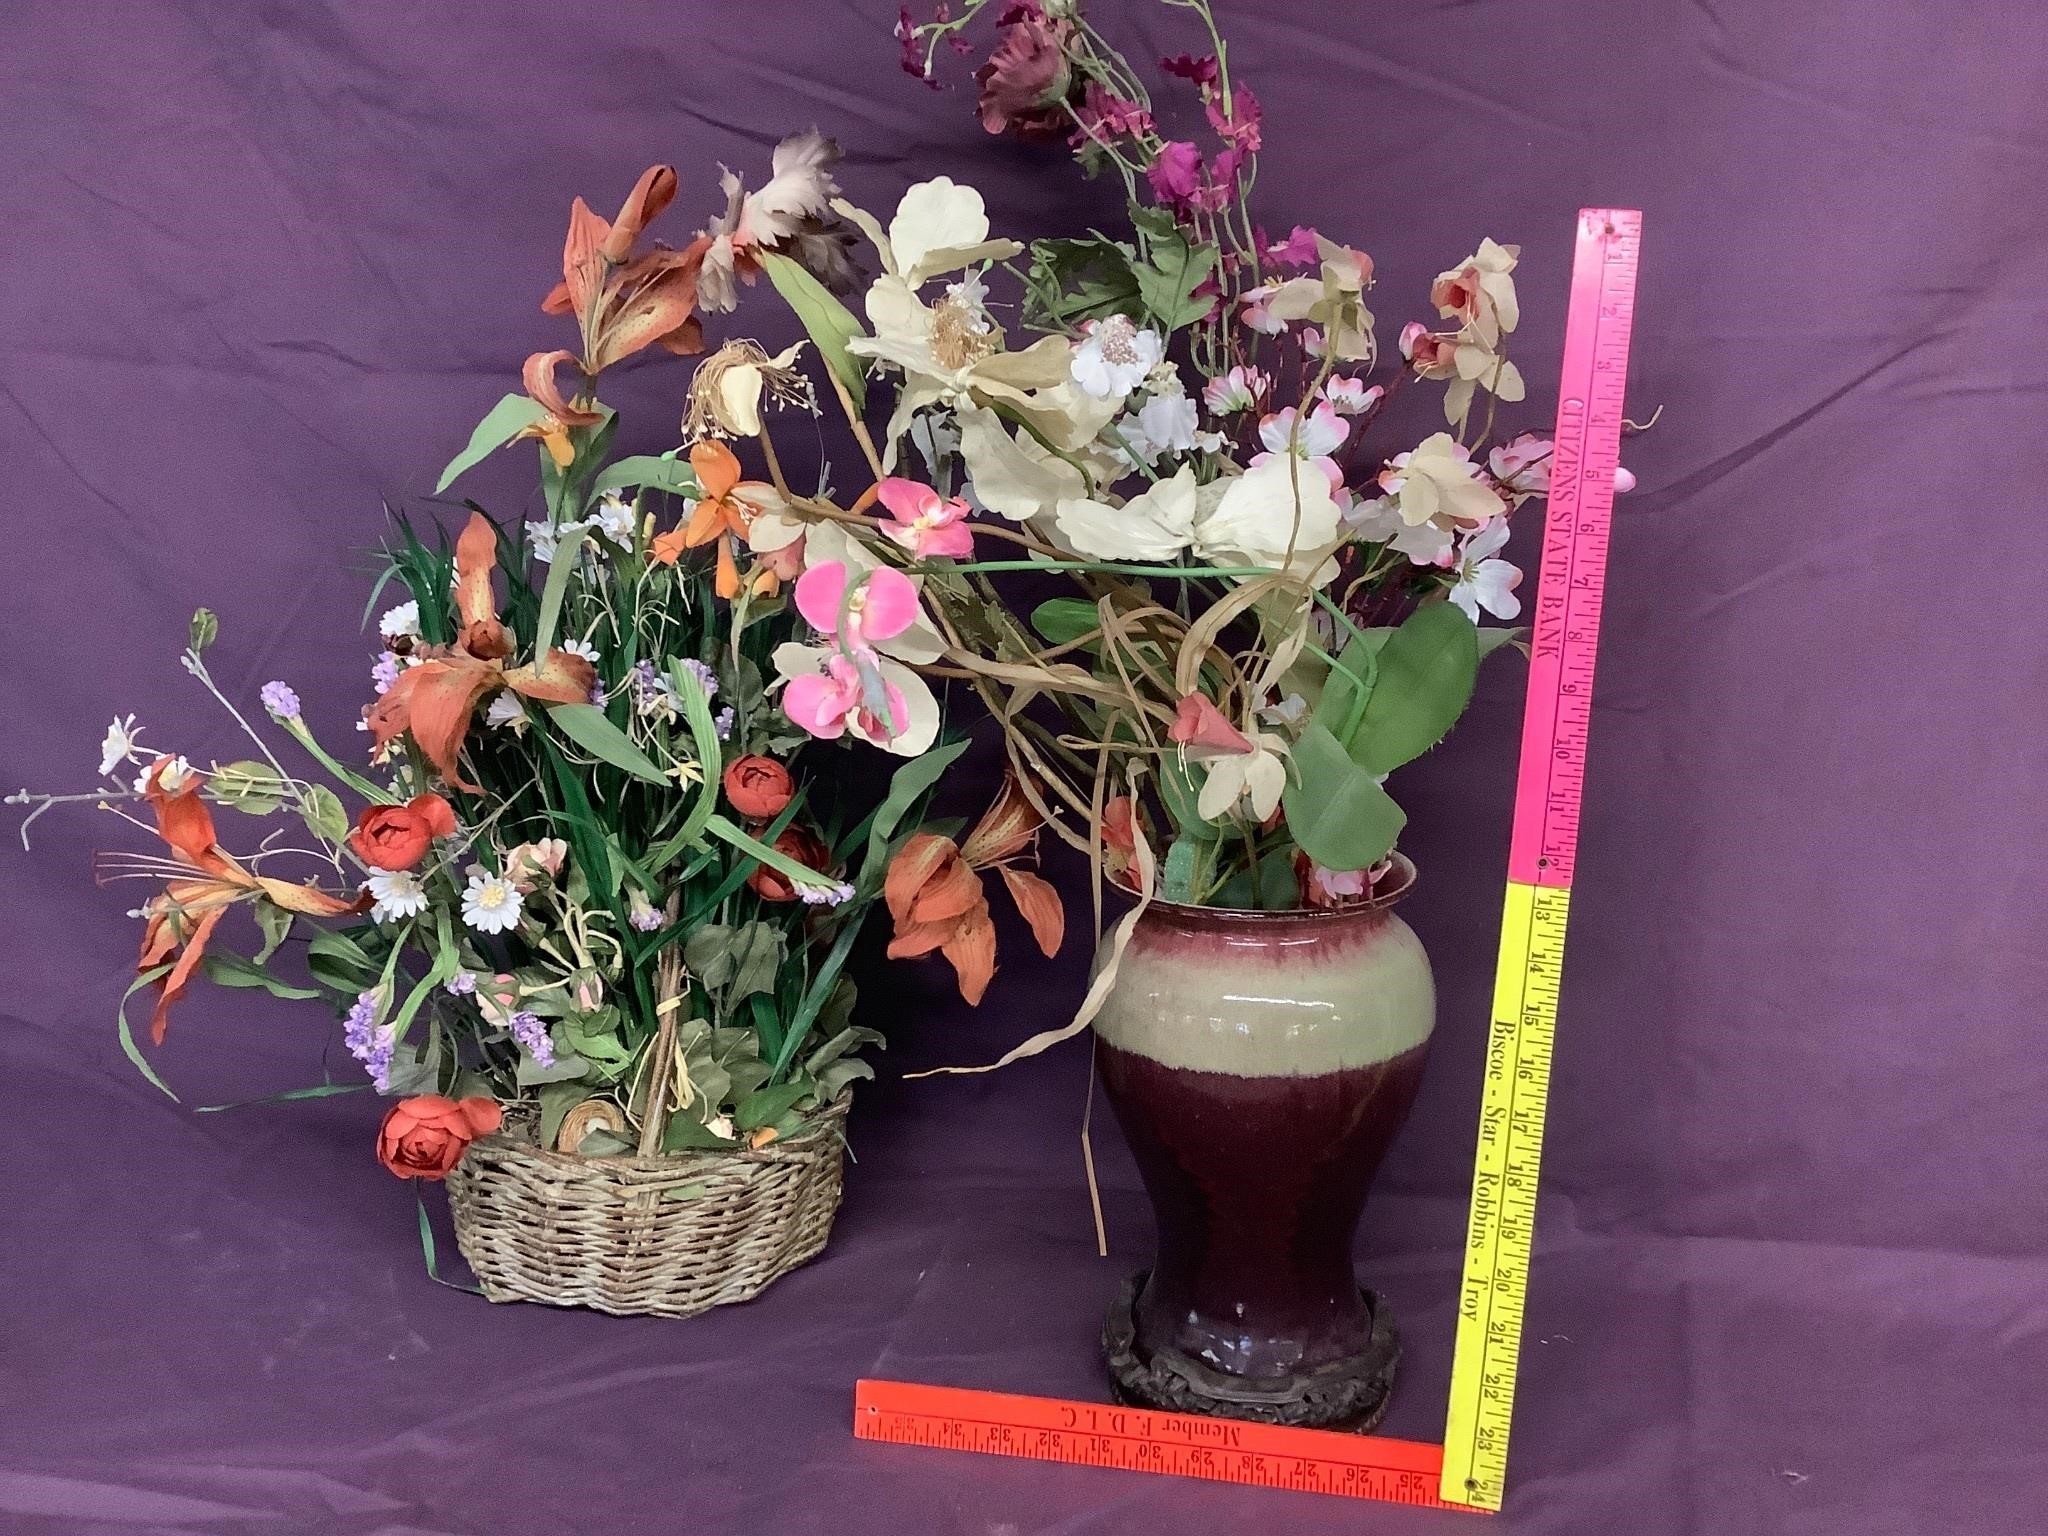 Pottery vase- flower arrangments